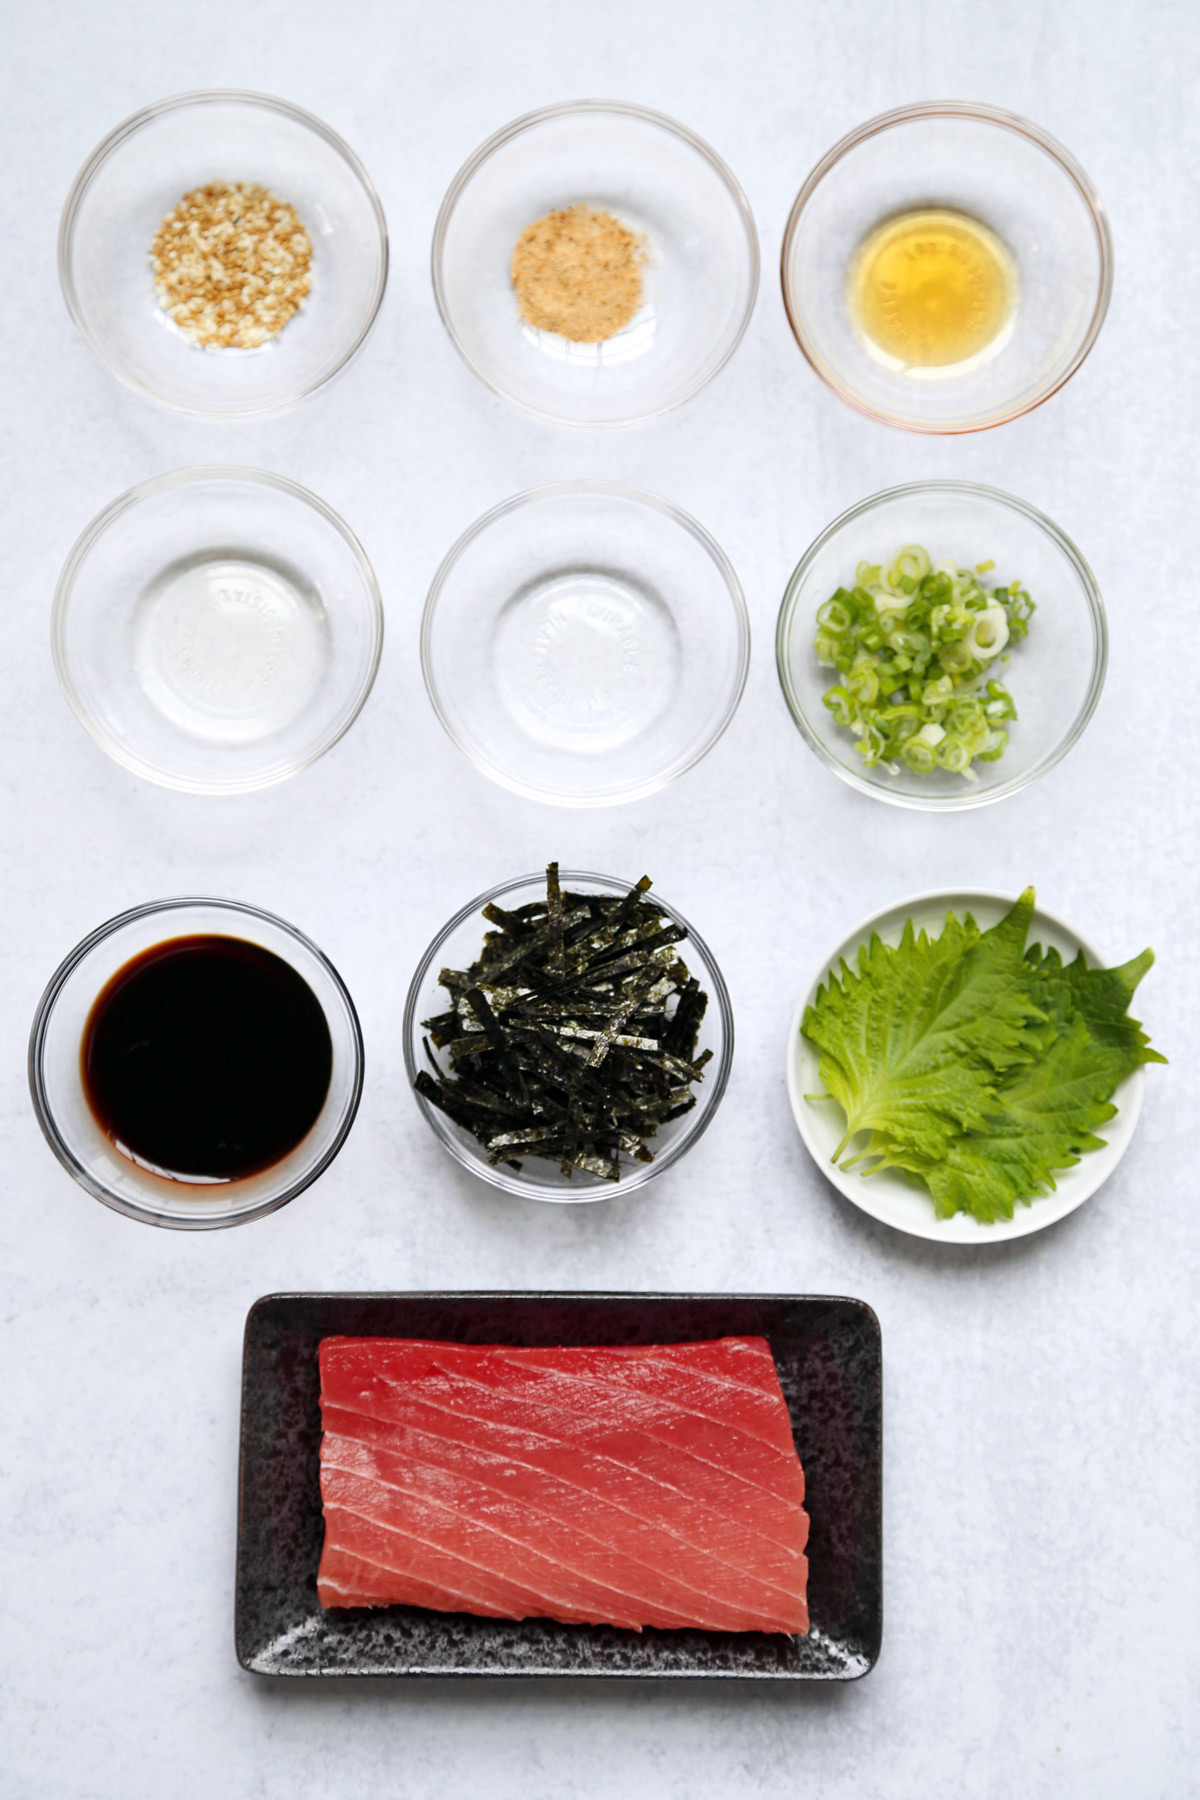 Ingredients for tekka don (tuna bowl)